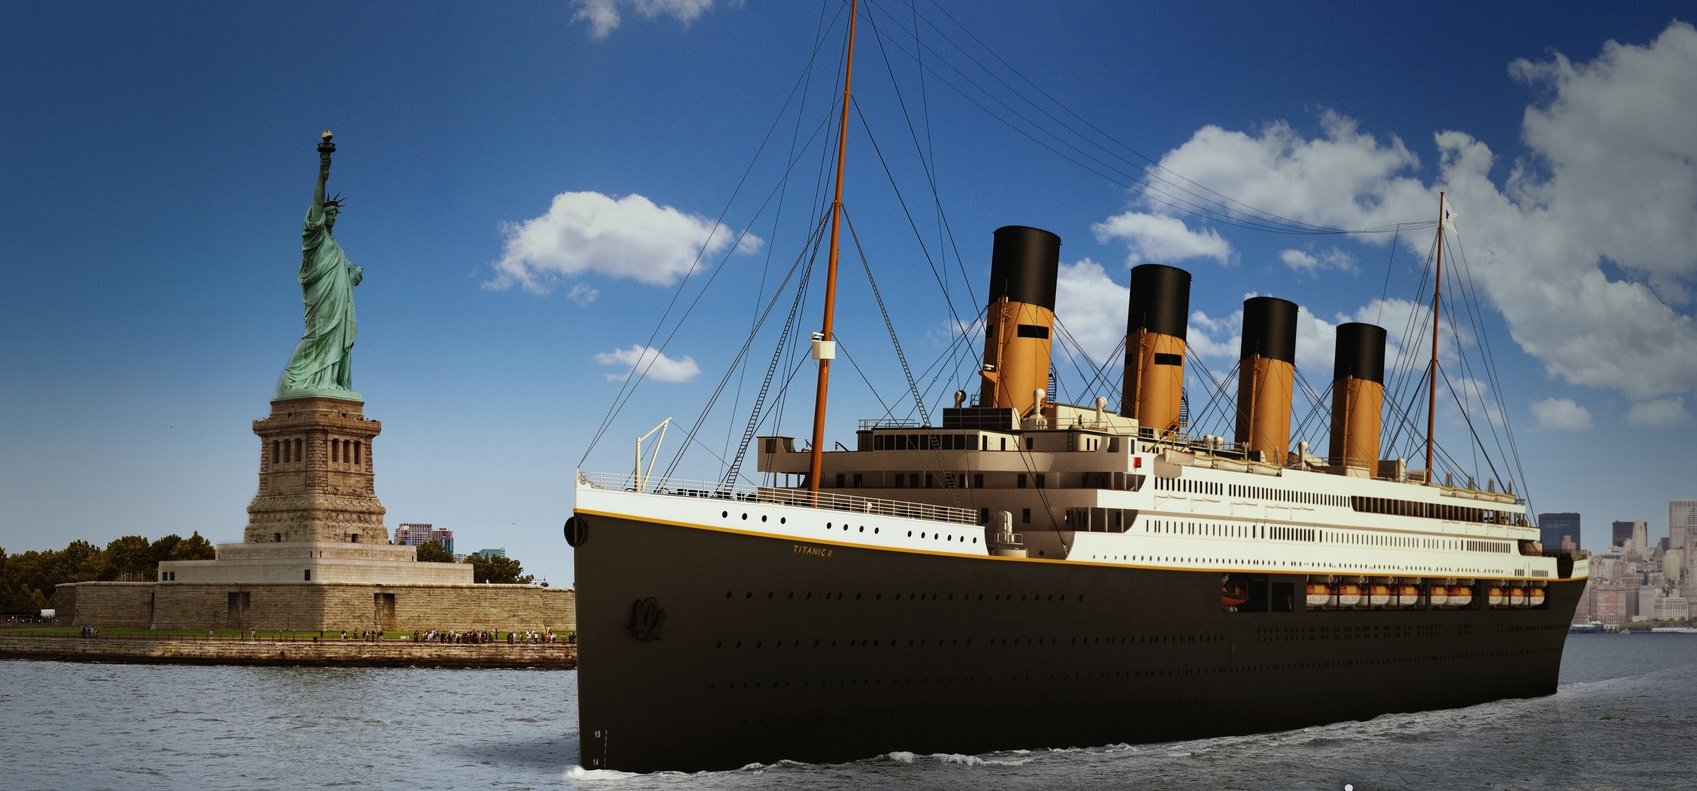 Megépítik a Titanic hasonmását – Újra lecsap majd a hajóra a balszerencse?